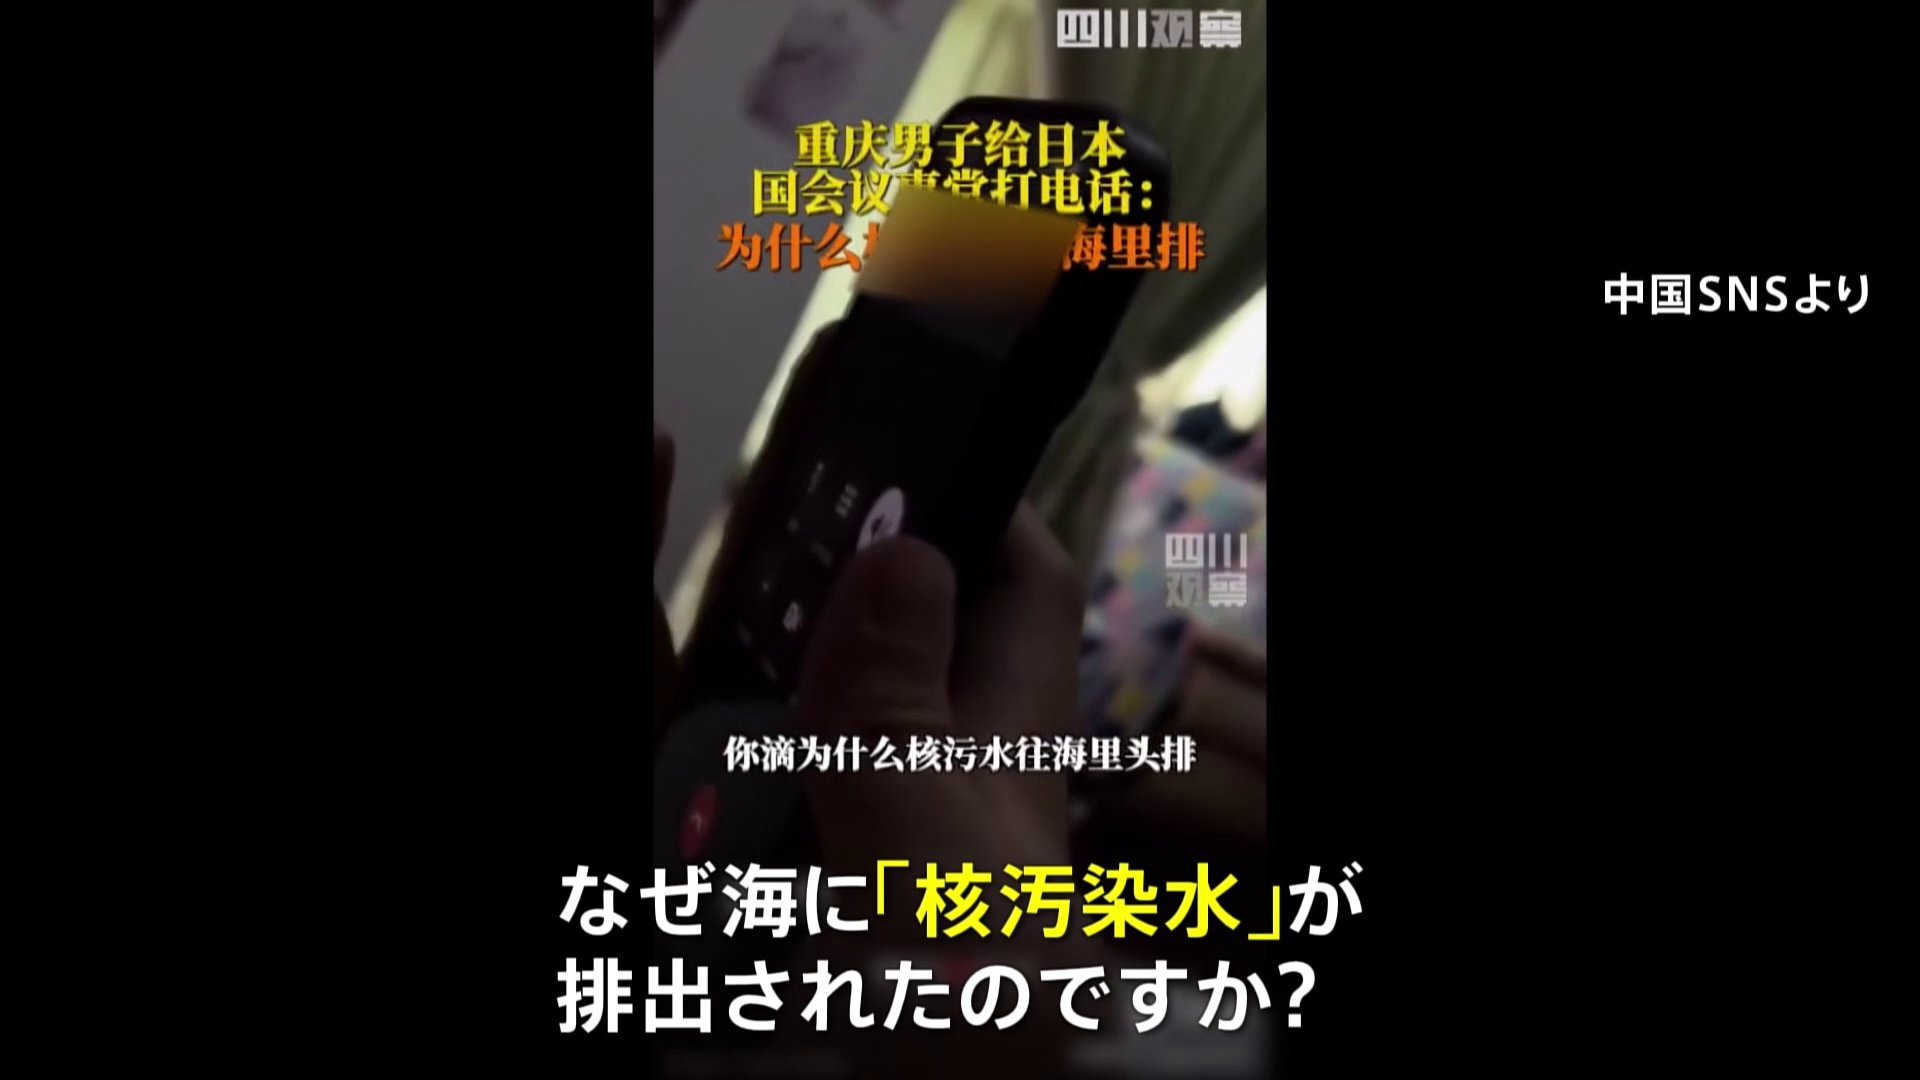 中国から日本への迷惑電話　動画投稿相次ぐ　日本大使館は中国当局に厳正な対応求める